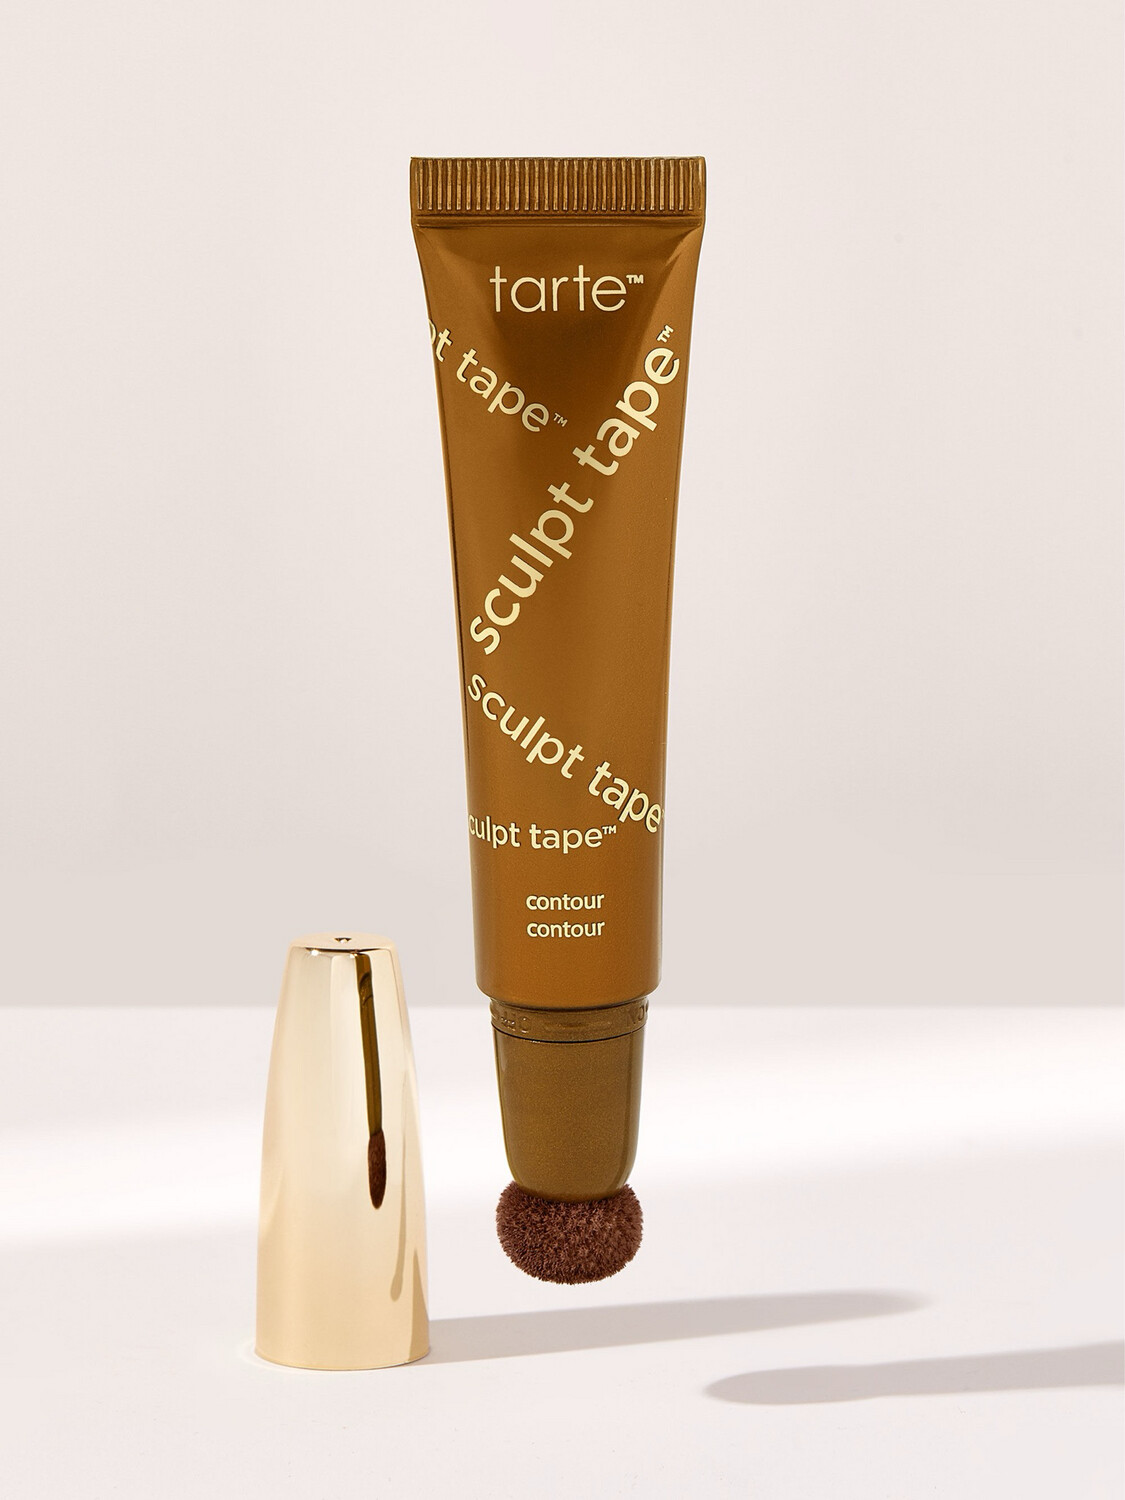 Tarte - sculpt tape™ contour | Warm Bronze